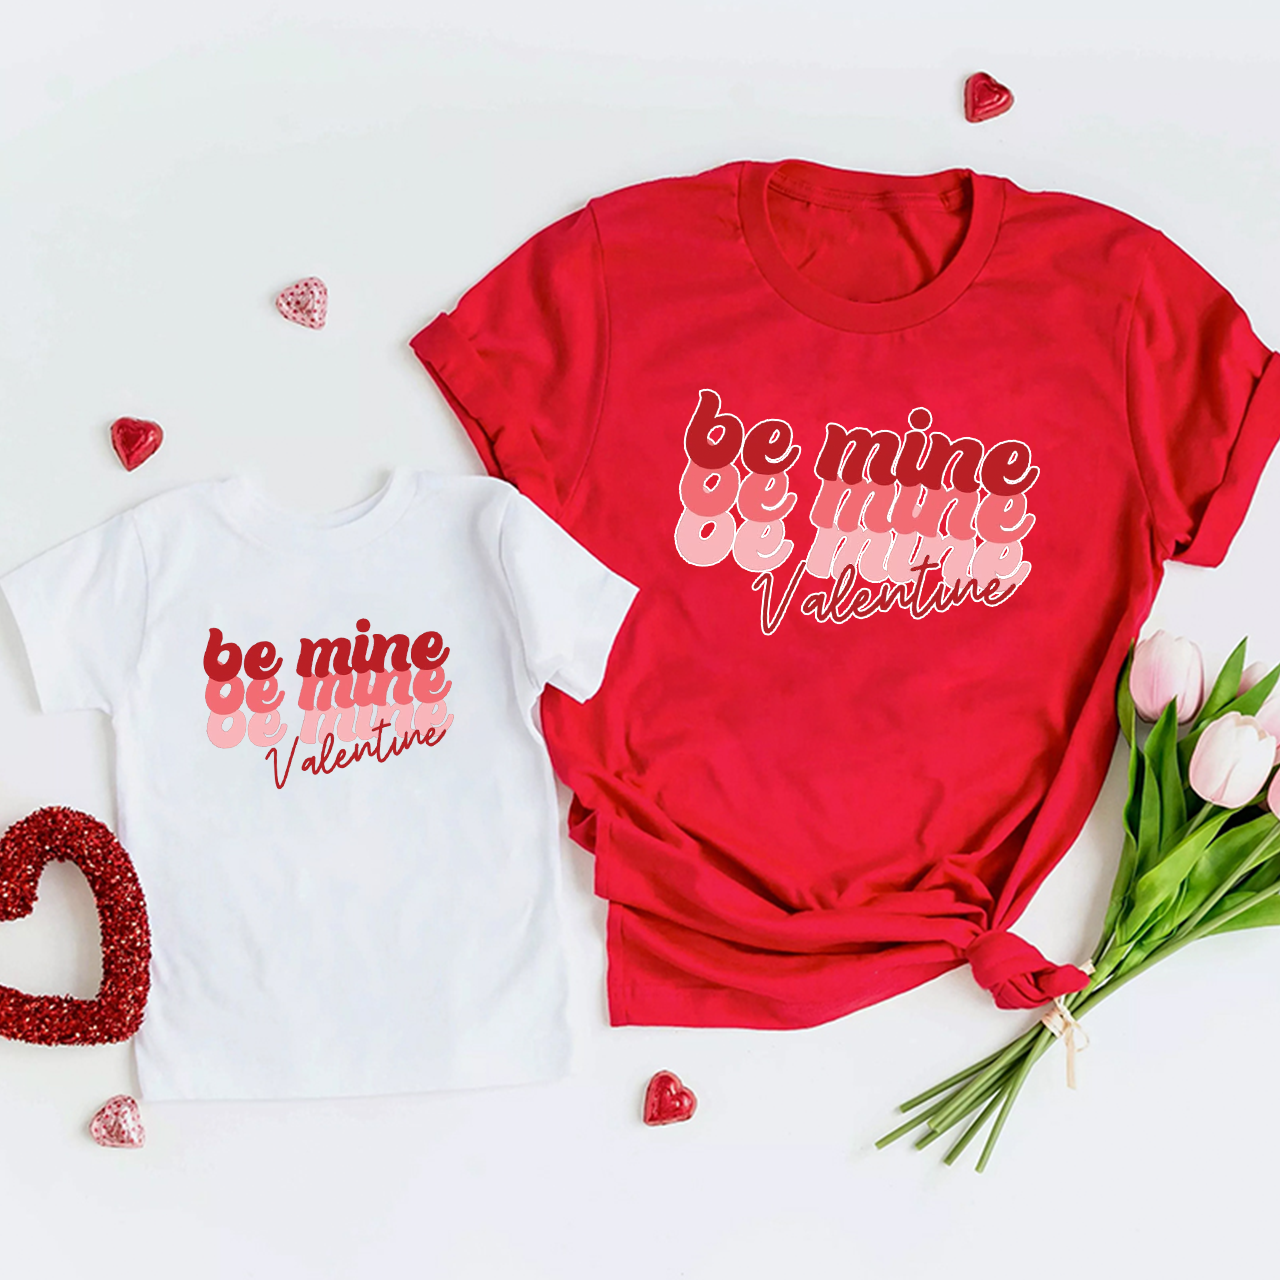 Be Mine Valentine Matching Shirts